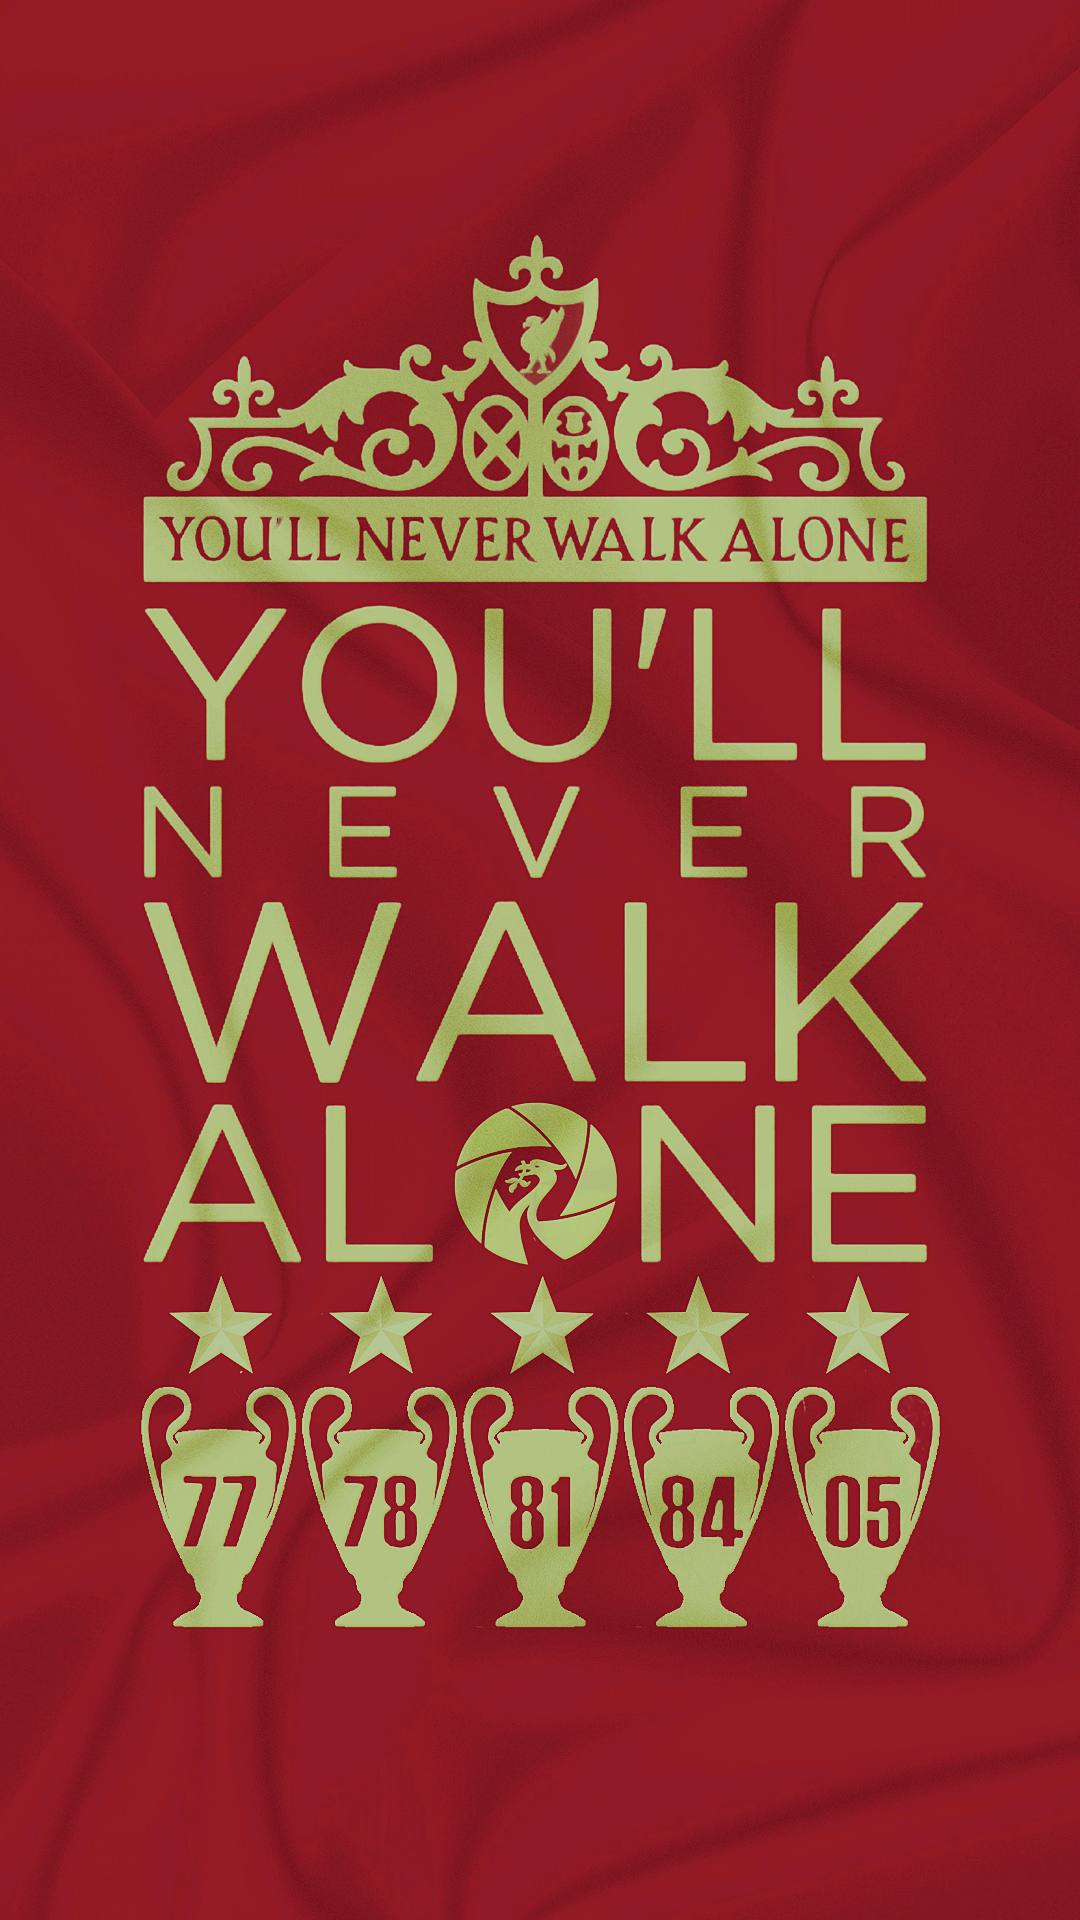 Liverpool FC. Liverpool fc wallpaper